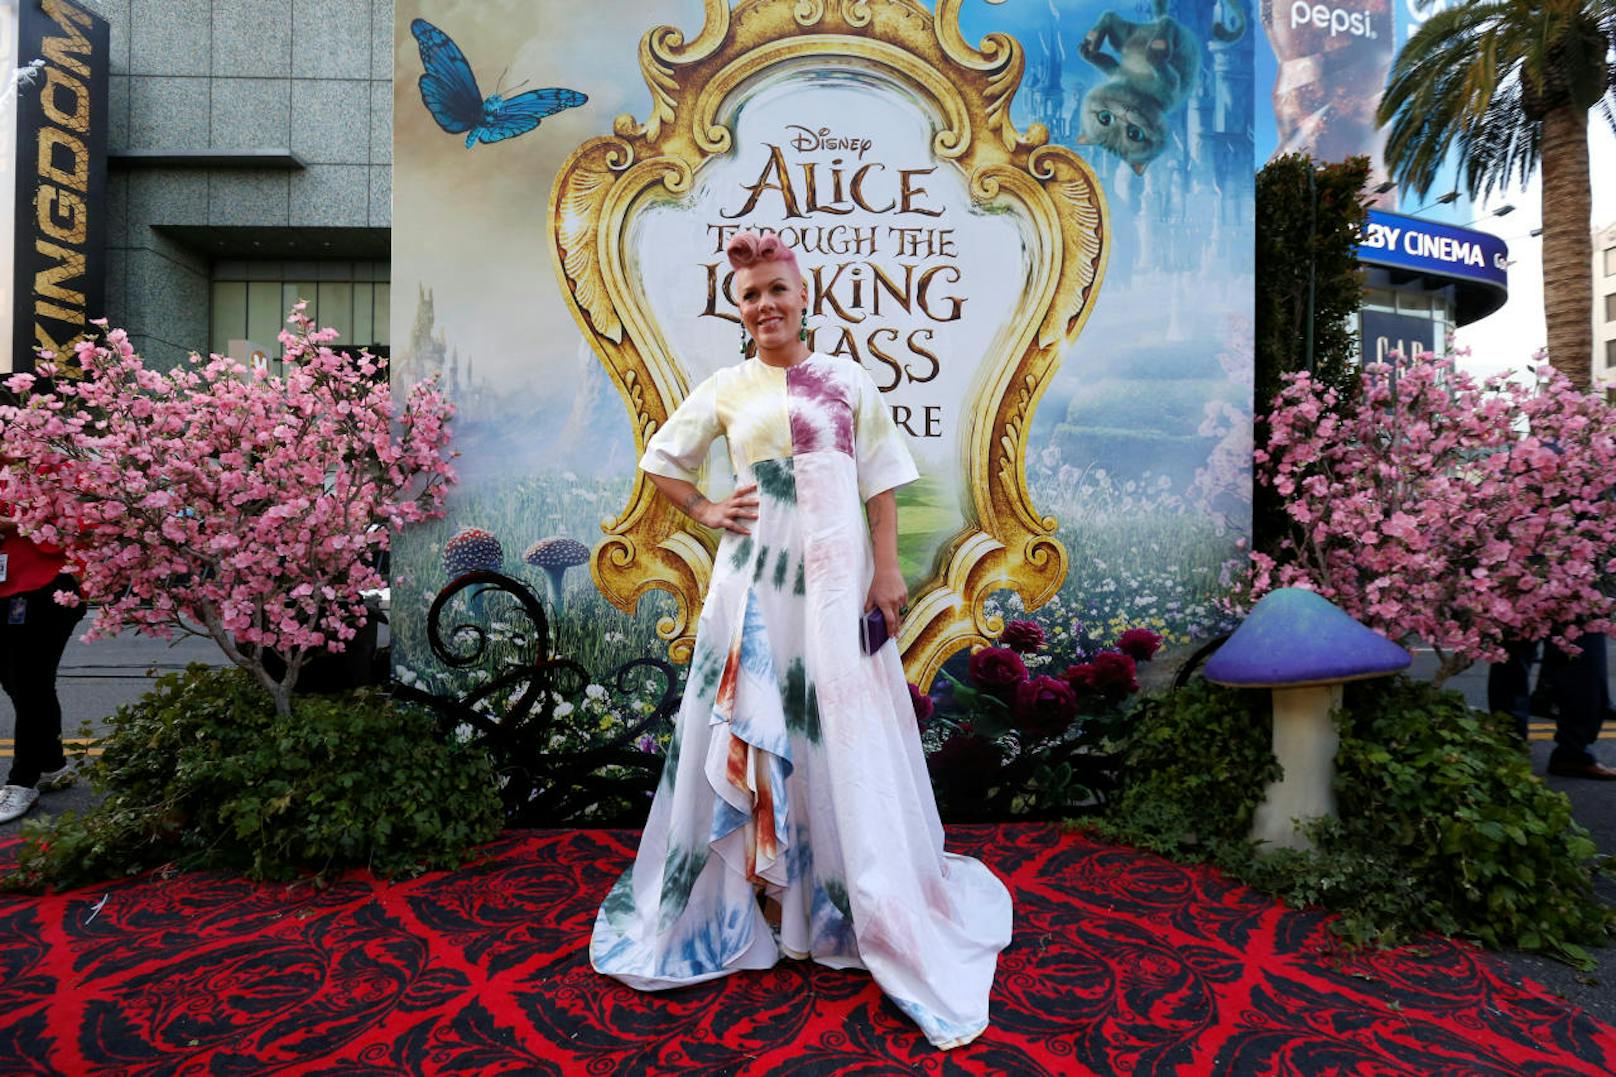 Pink bei der Premiere von "Alice Through the Looking Glass"